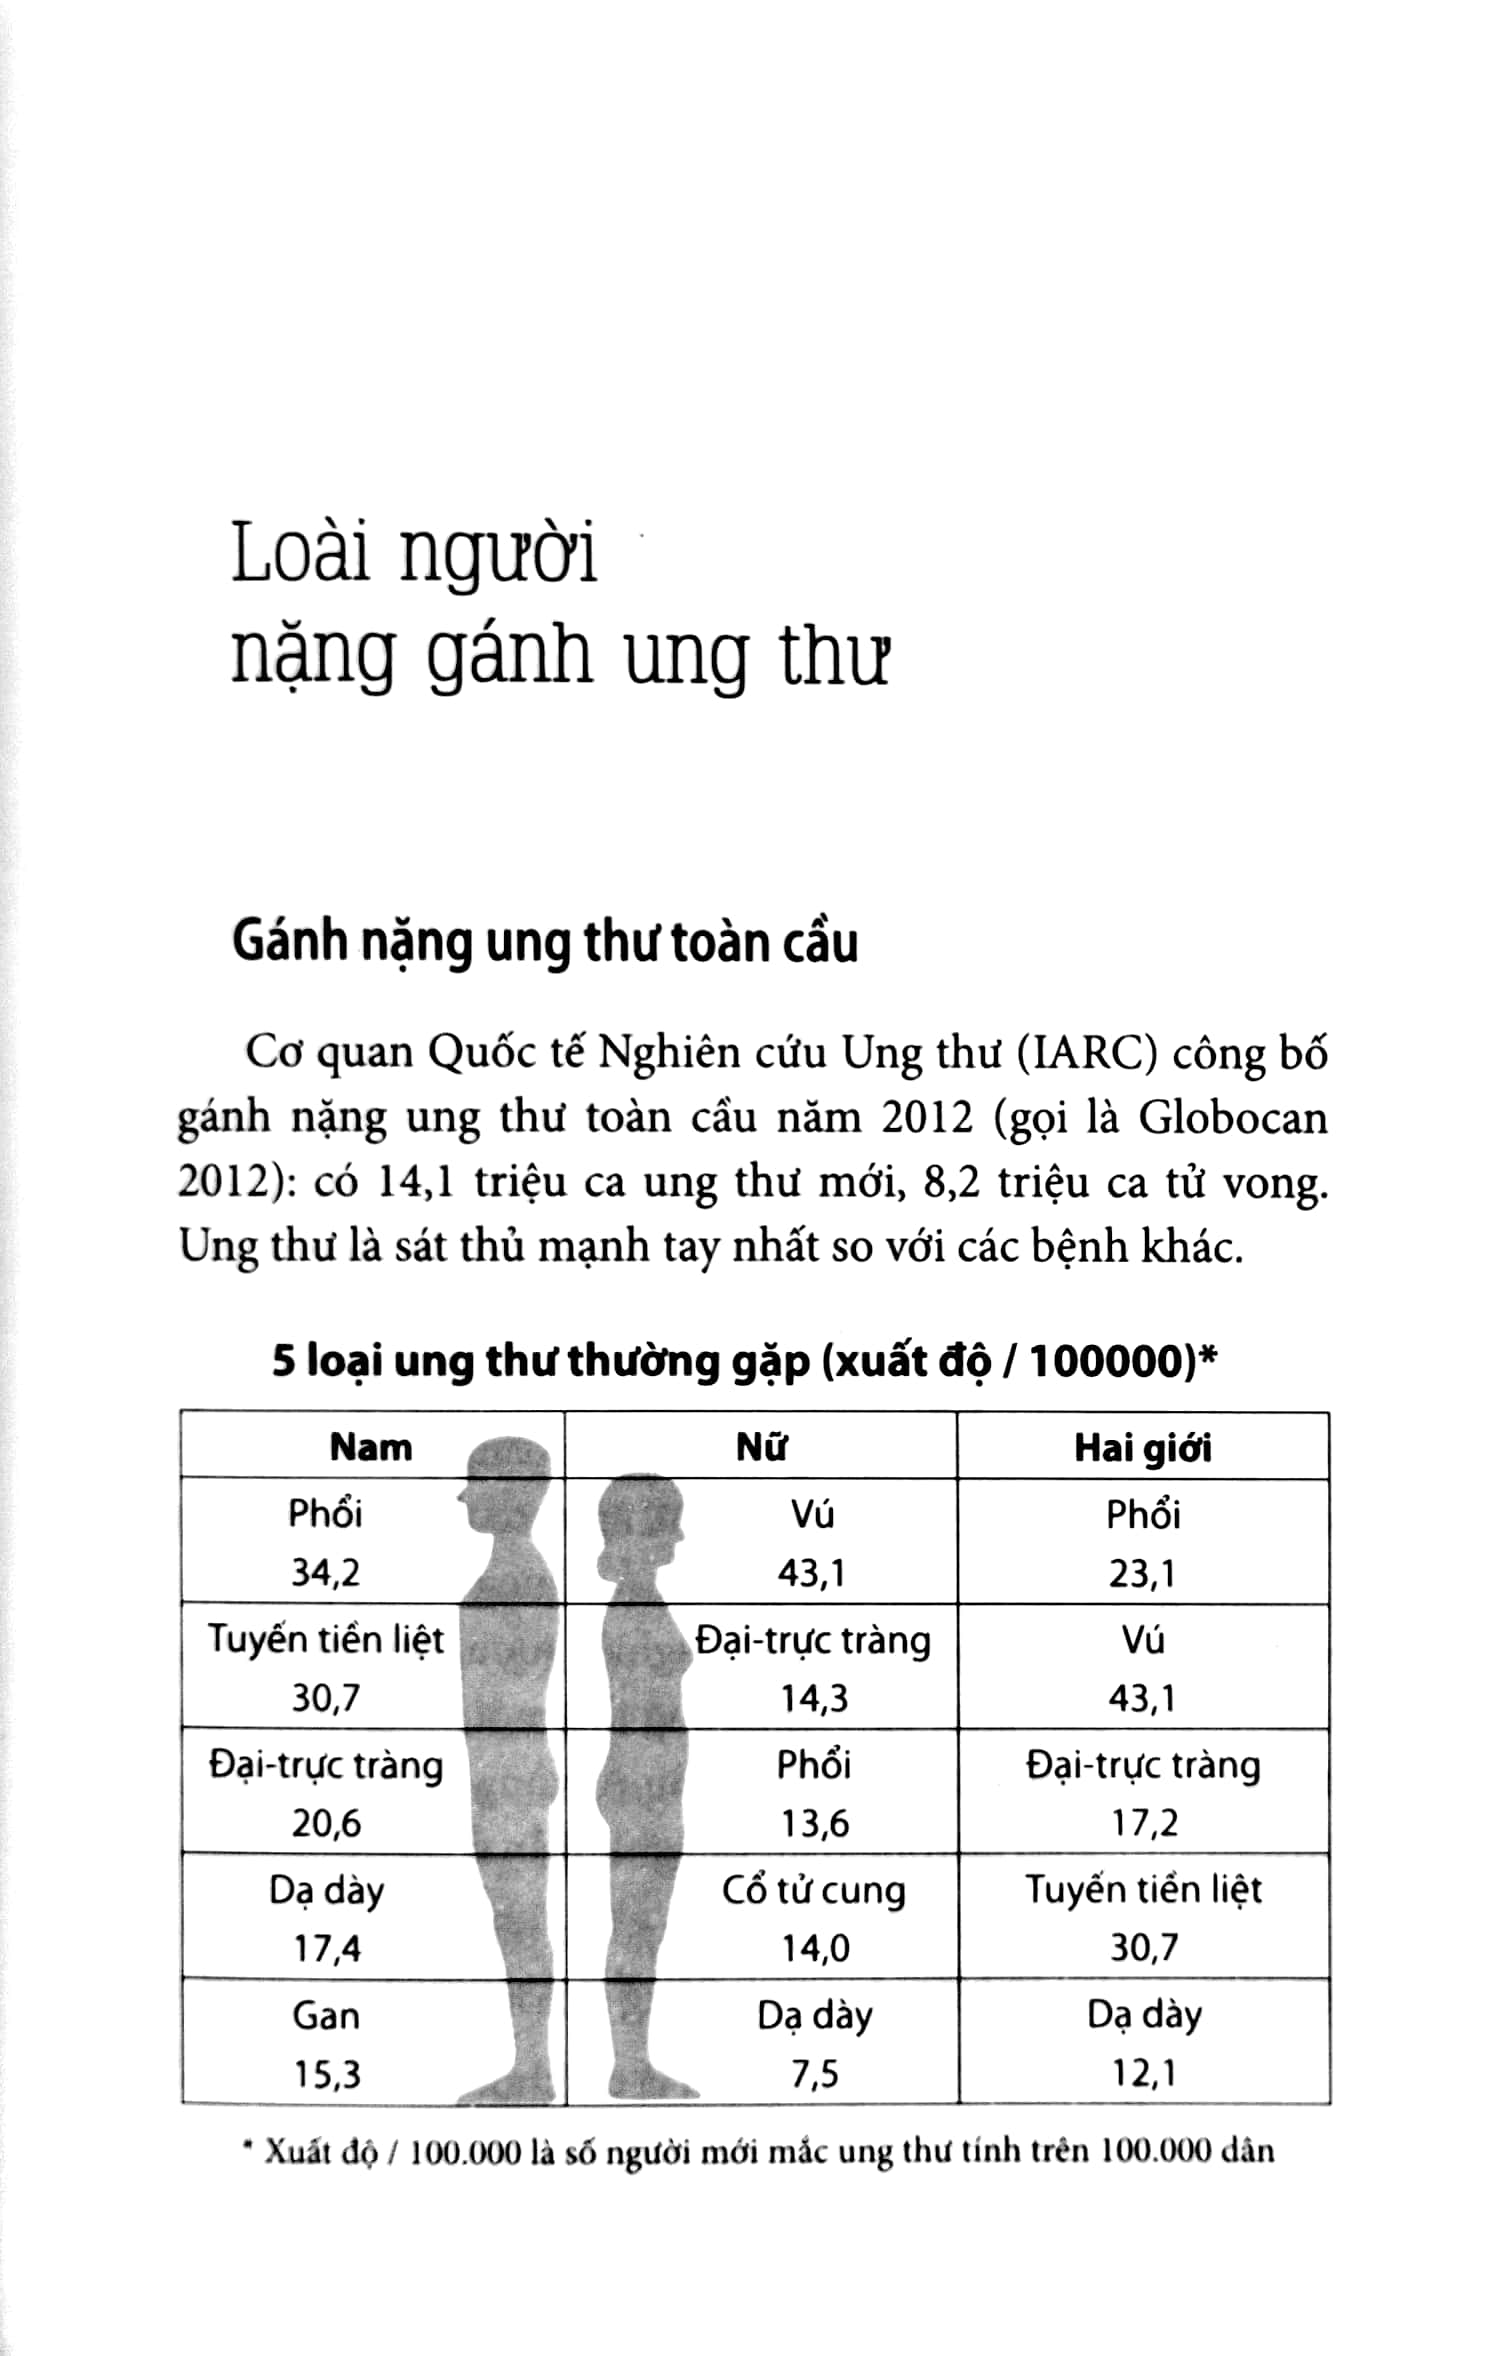 Cẩm Nang Phòng Trị Ung Thư PDF